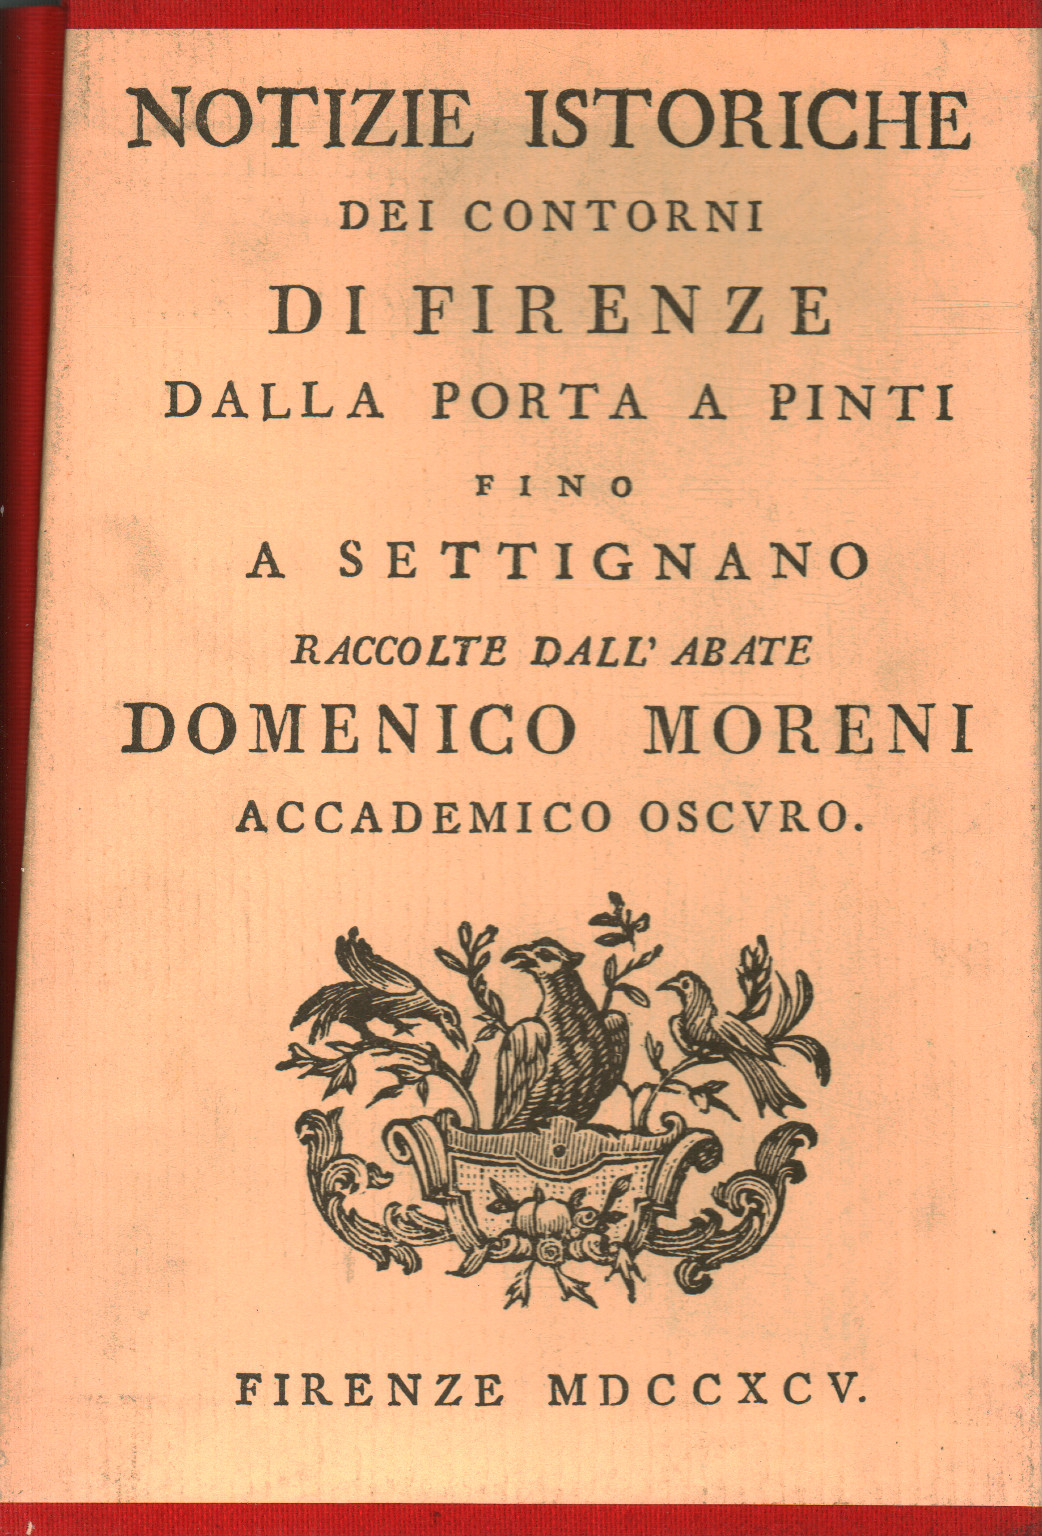 Noticias históricas de los alrededores de Florencia (6 tomo, s.a.